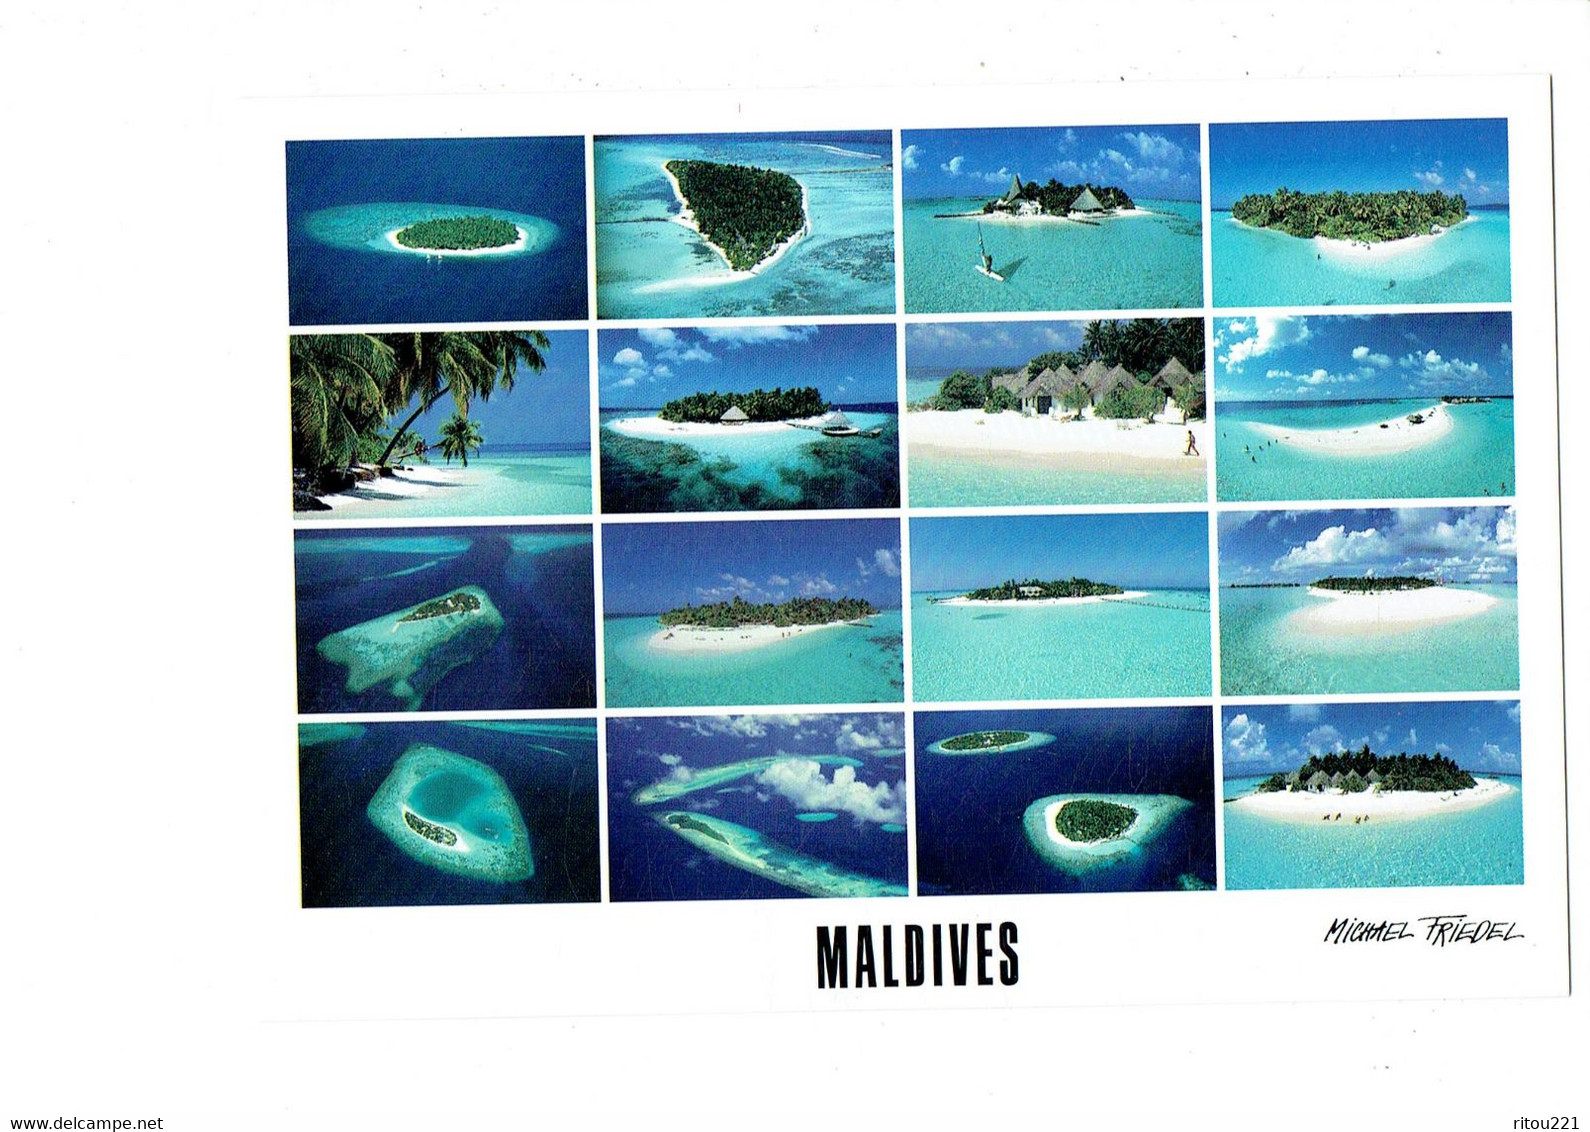 Cpm - MALDIVES - HOTEL ISLANDS - Photo Michael Friedel - Club Med. IHURU BANDOS Plage - Maldive